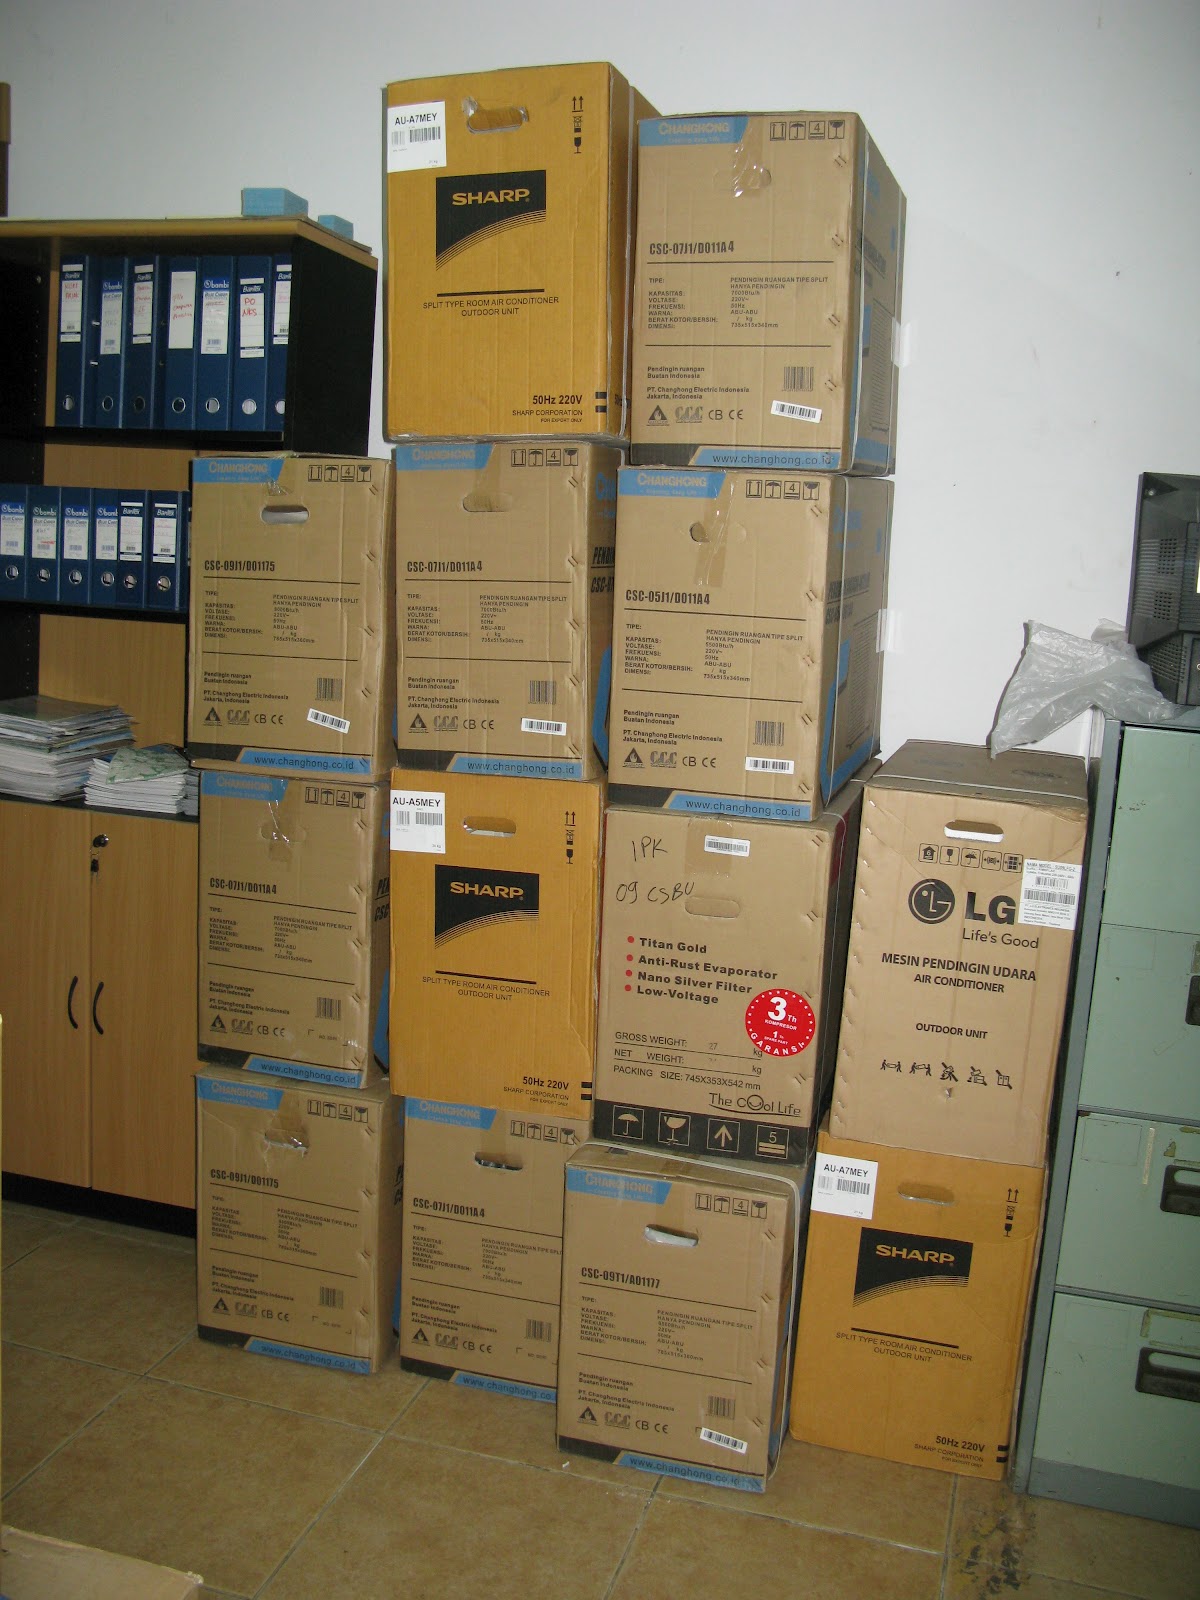 Macam - Macam Elektronik Air Conditioner: September 2012